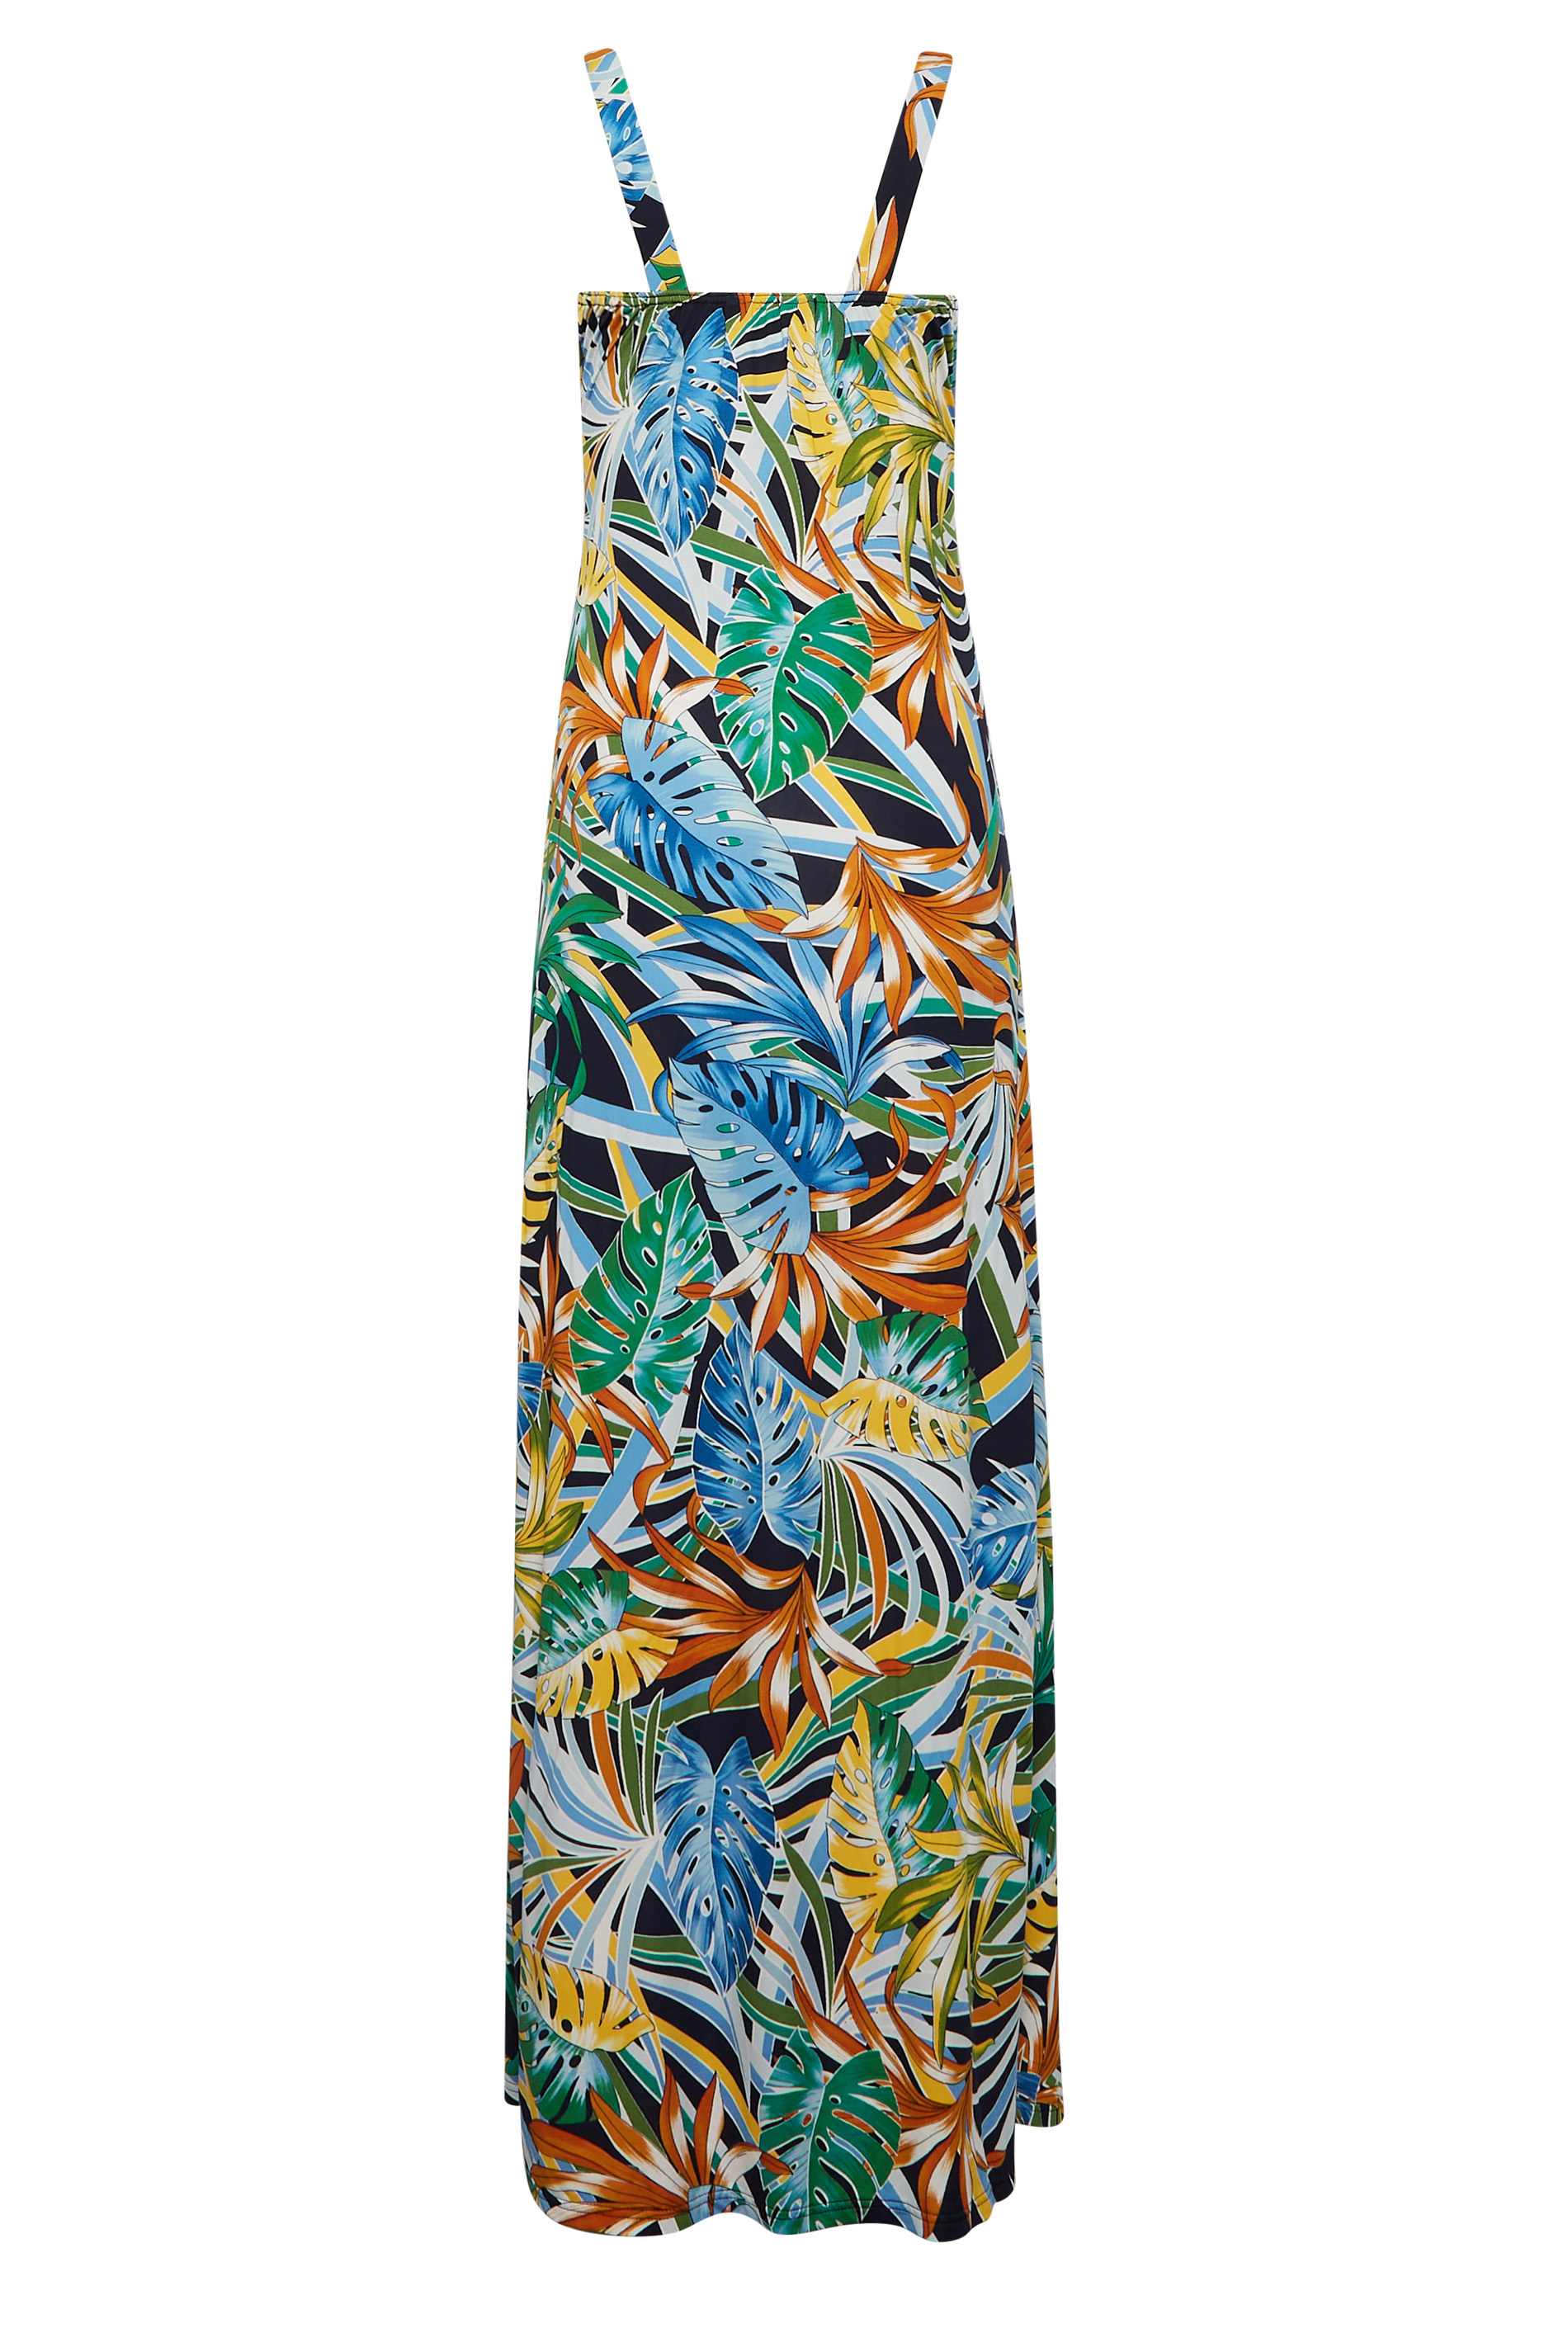 LTS Tall Green Palm Leaf Print Maxi Dress | Long Tall Sally  3